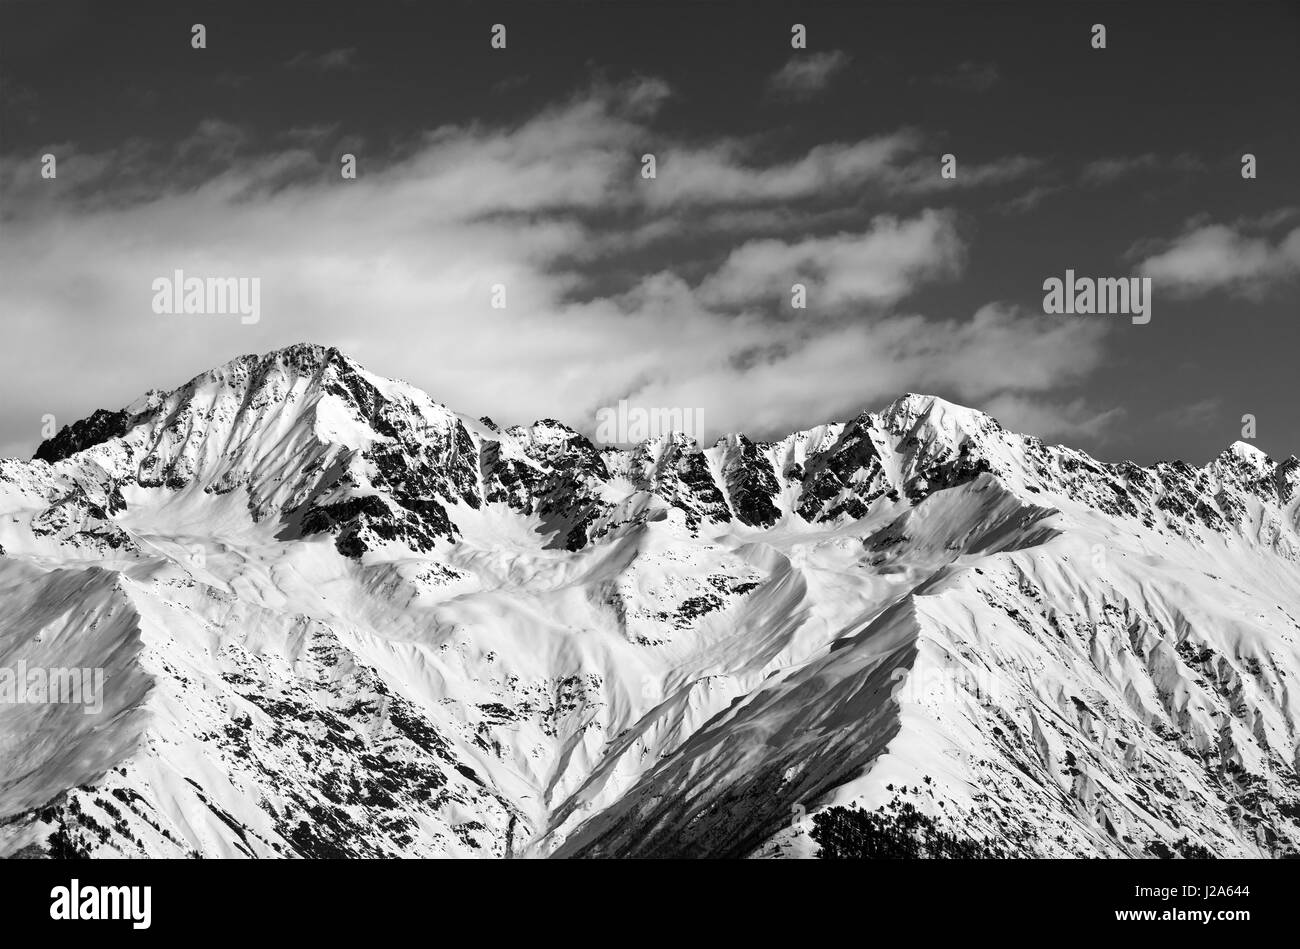 Black and white snow mountains in winter sun day. View from ski lift on Hatsvali, Svaneti region of Georgia. Caucasus Mountains. Stock Photo